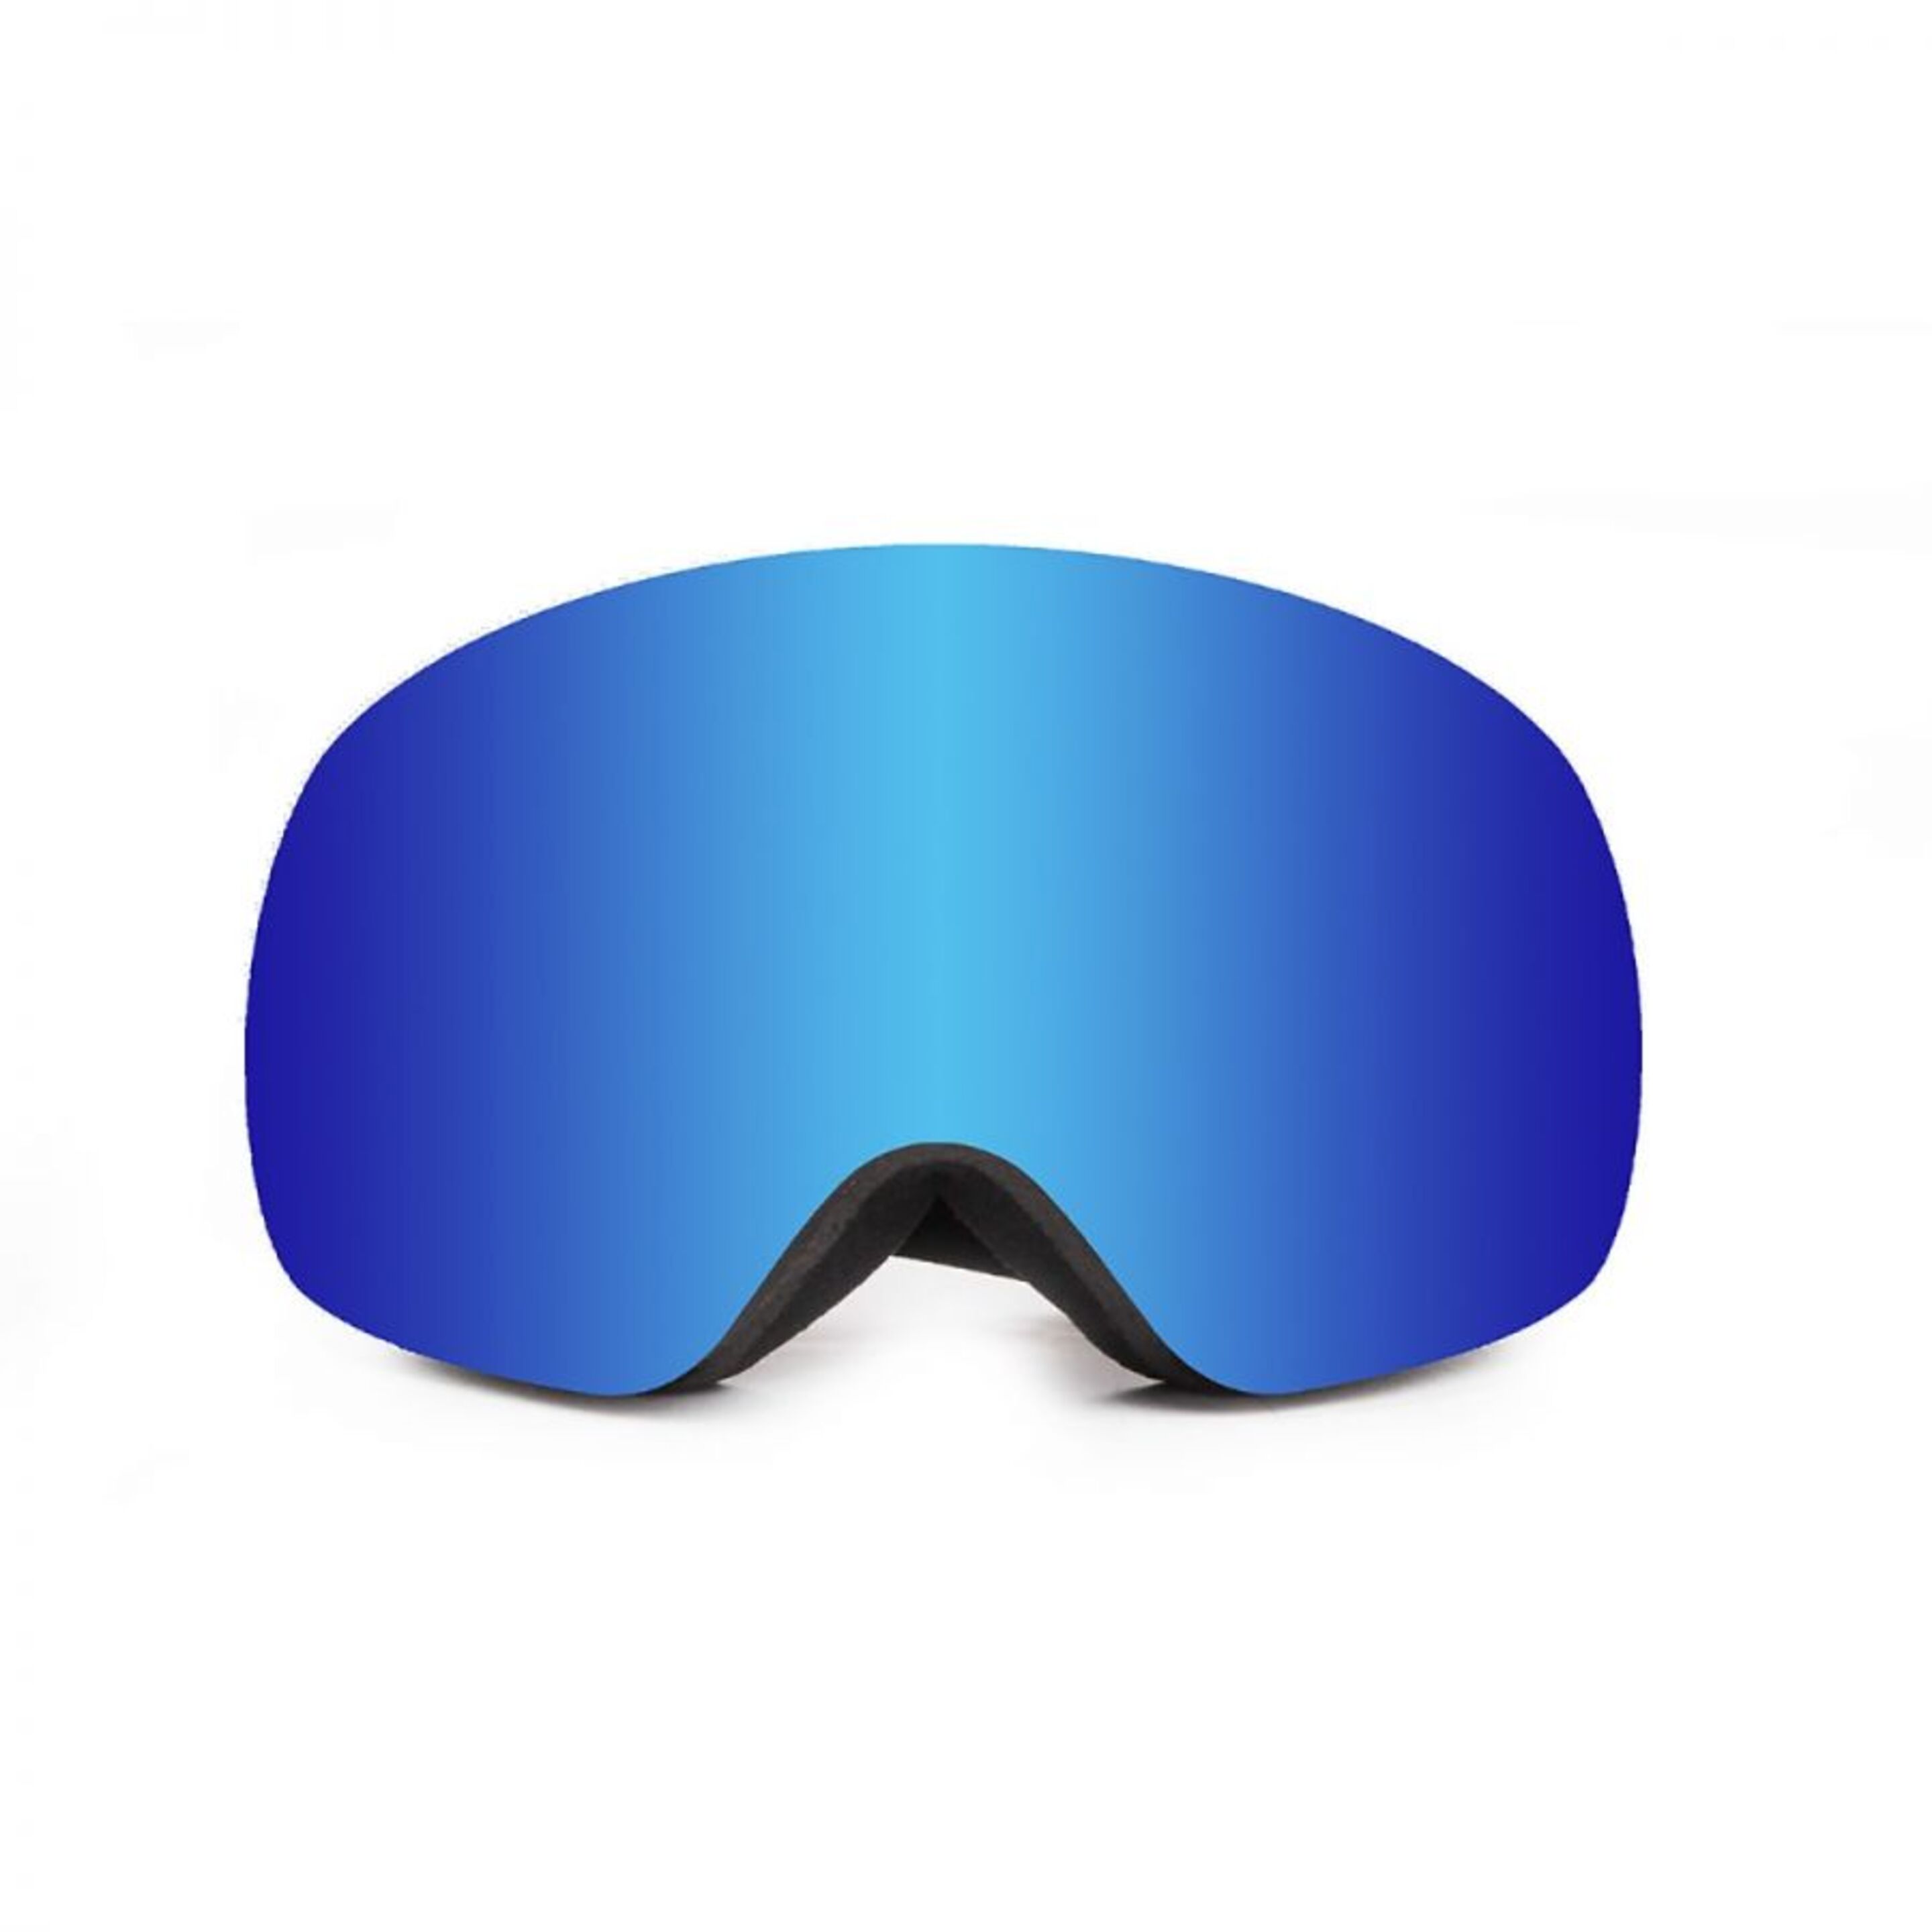 Mascara De Ski Ocean Sunglasses Arlberg - Azul Oscuro - Gafas Esquí  MKP